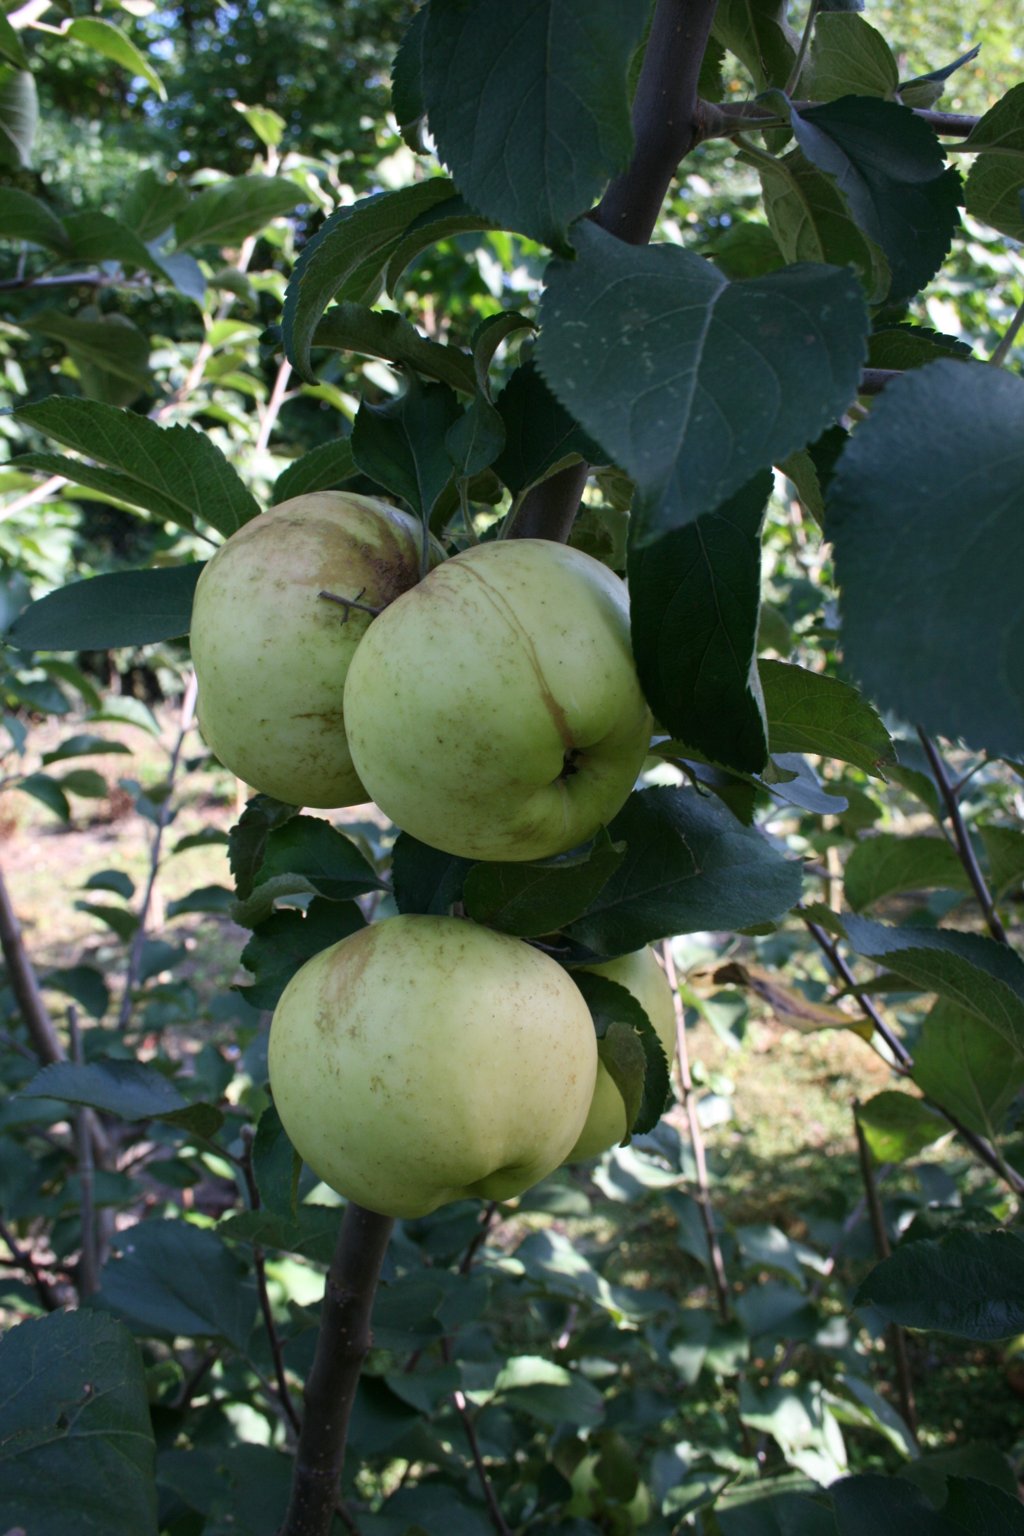 Jabłoń domowa "Antonówka Zw" / Malus domestica "Antonówka Zw"